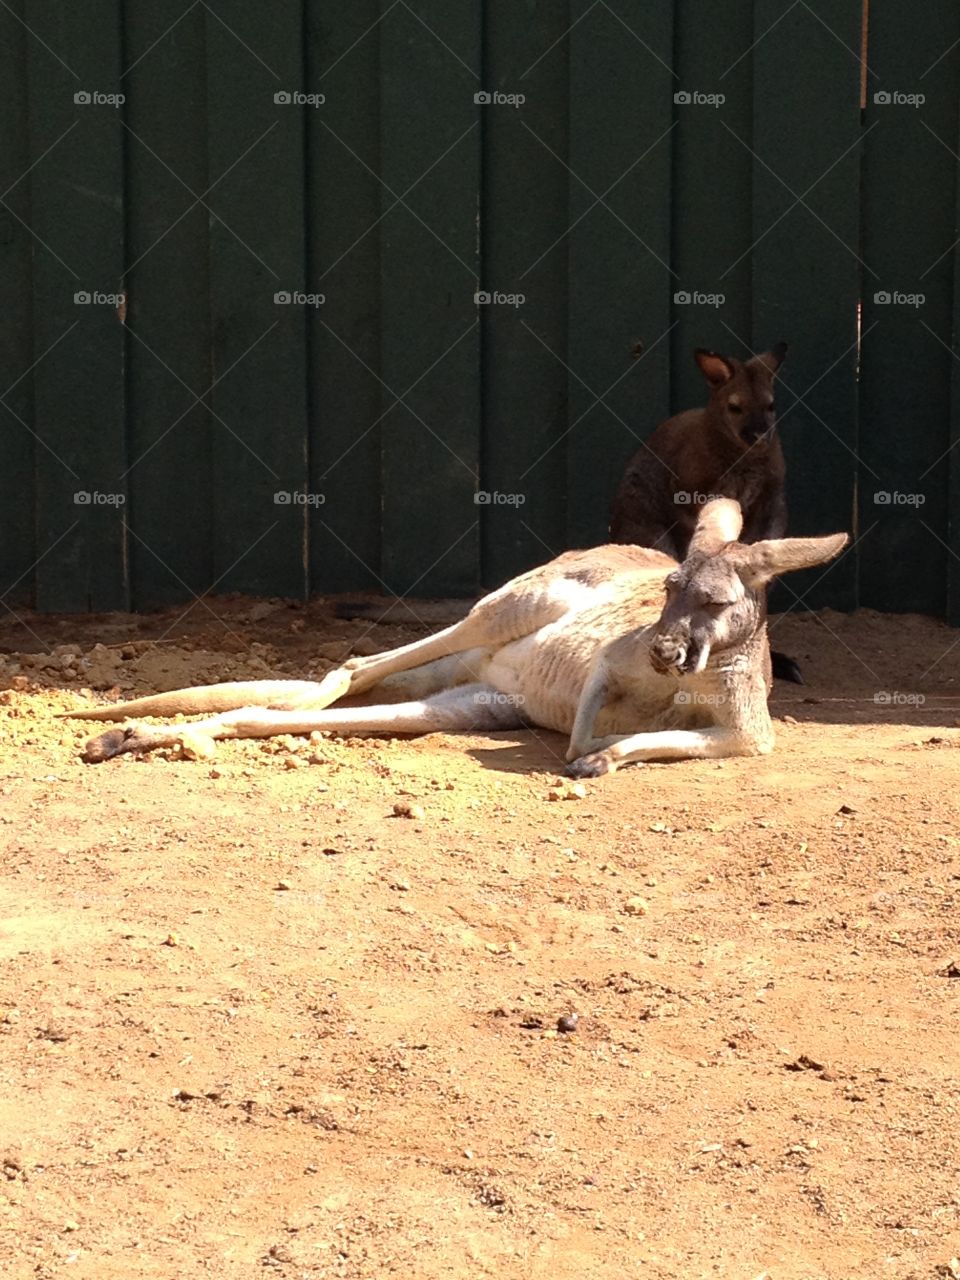 Kangaroo relaxing
Lounging kangaroo
